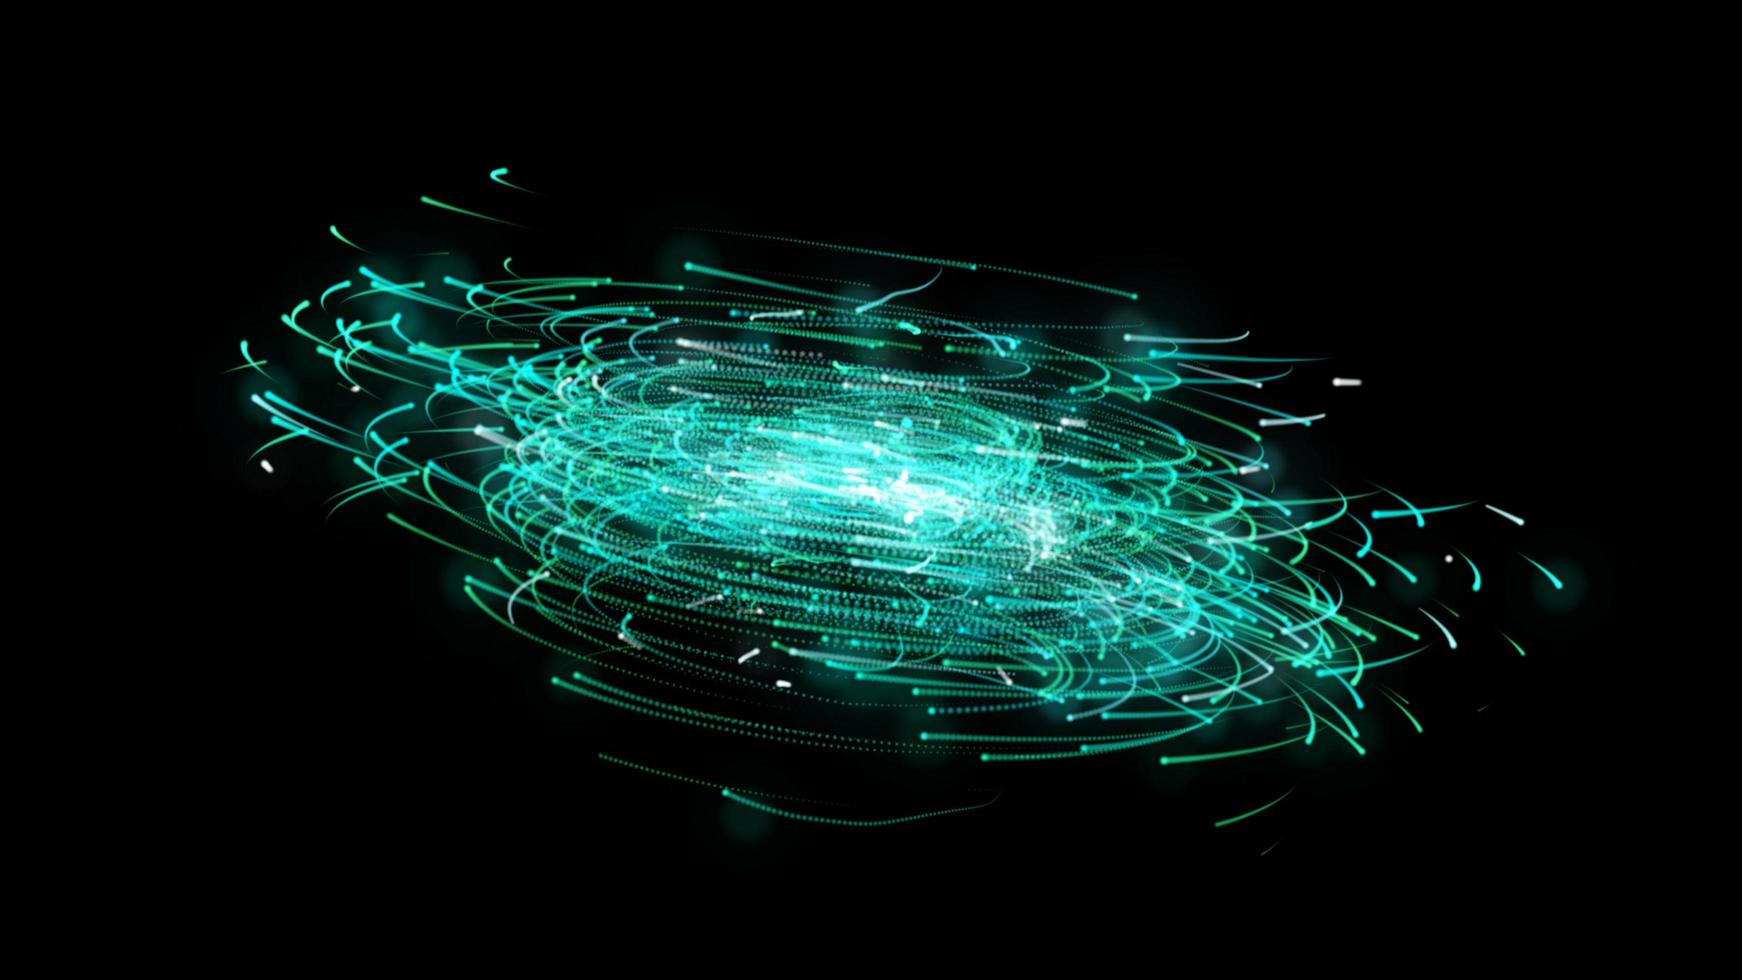 Grün rotieren kreisförmige Partikel im schwarzen Raum - Big Data Technologie Computer Illustration Grafik Hintergrundkonzept foto